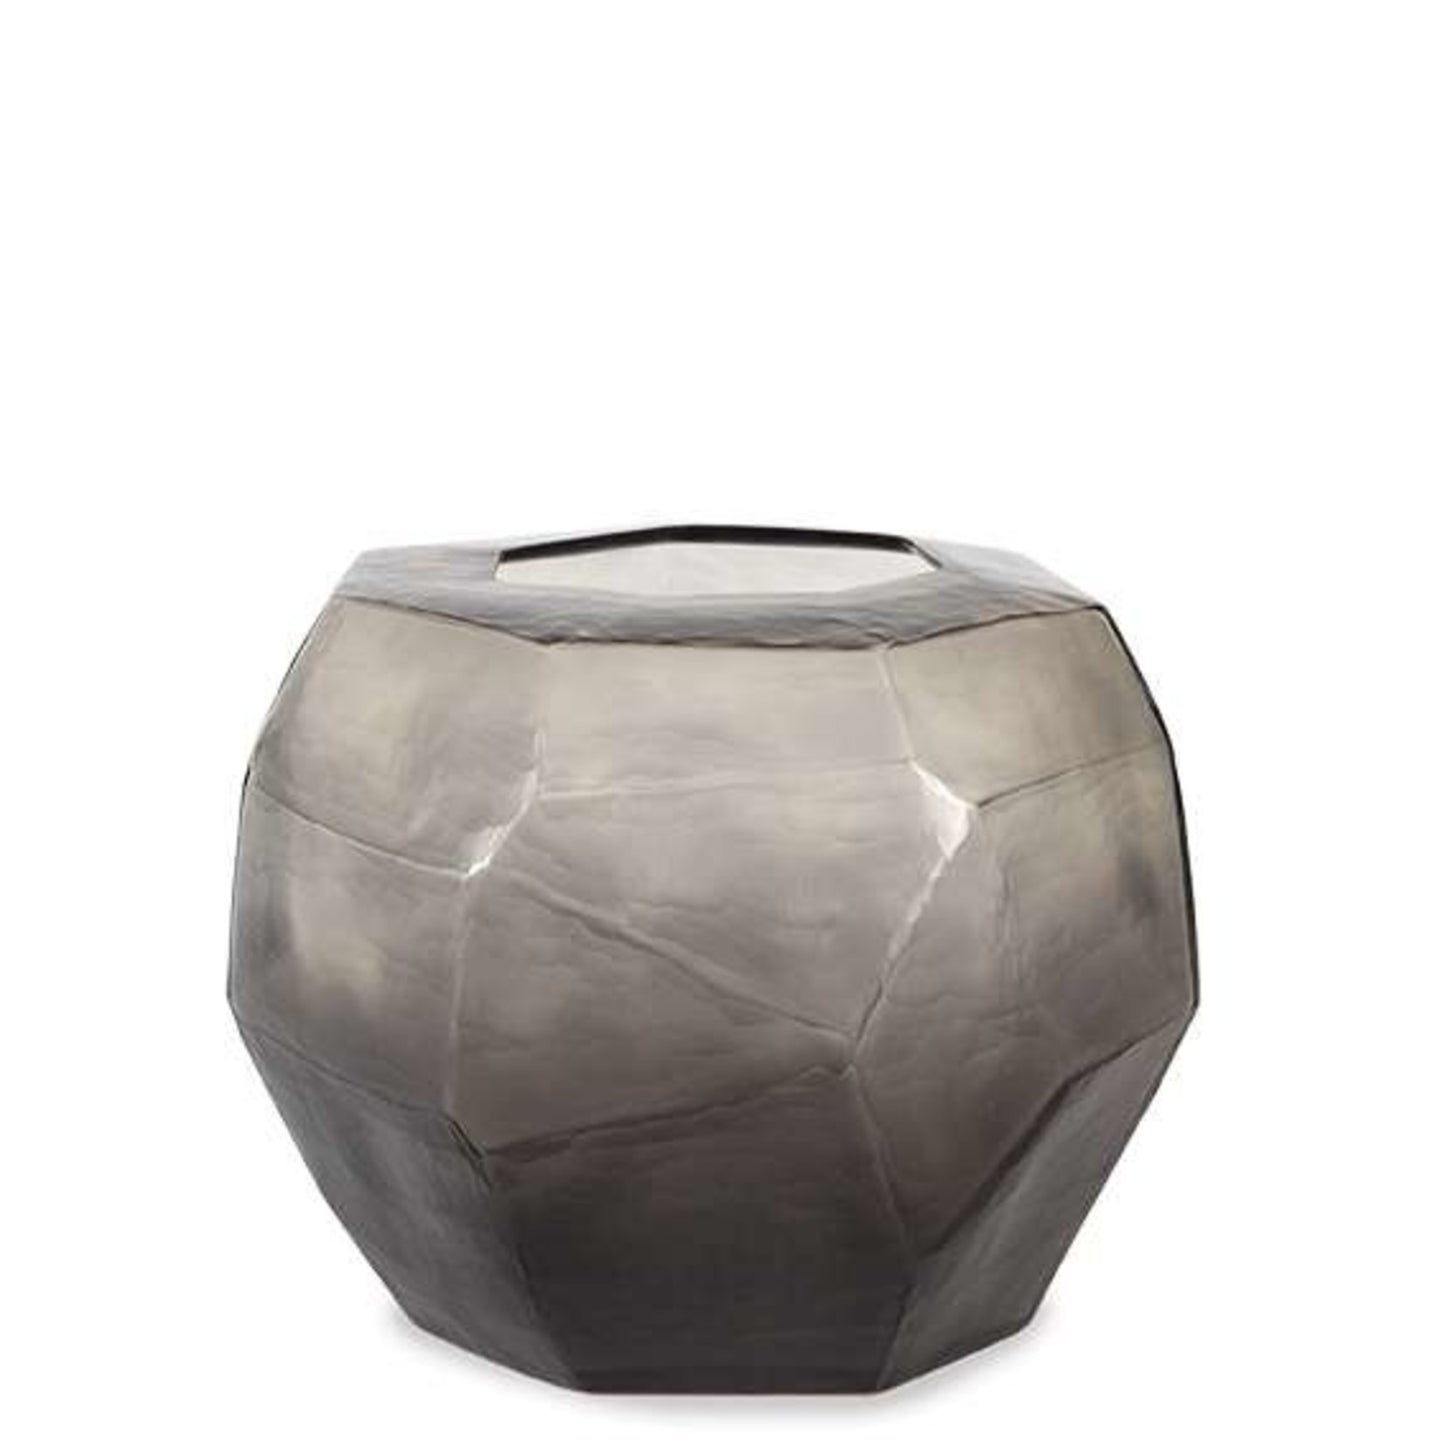 GUAXS - Cubistic round - Smokegrey/grey $995.00